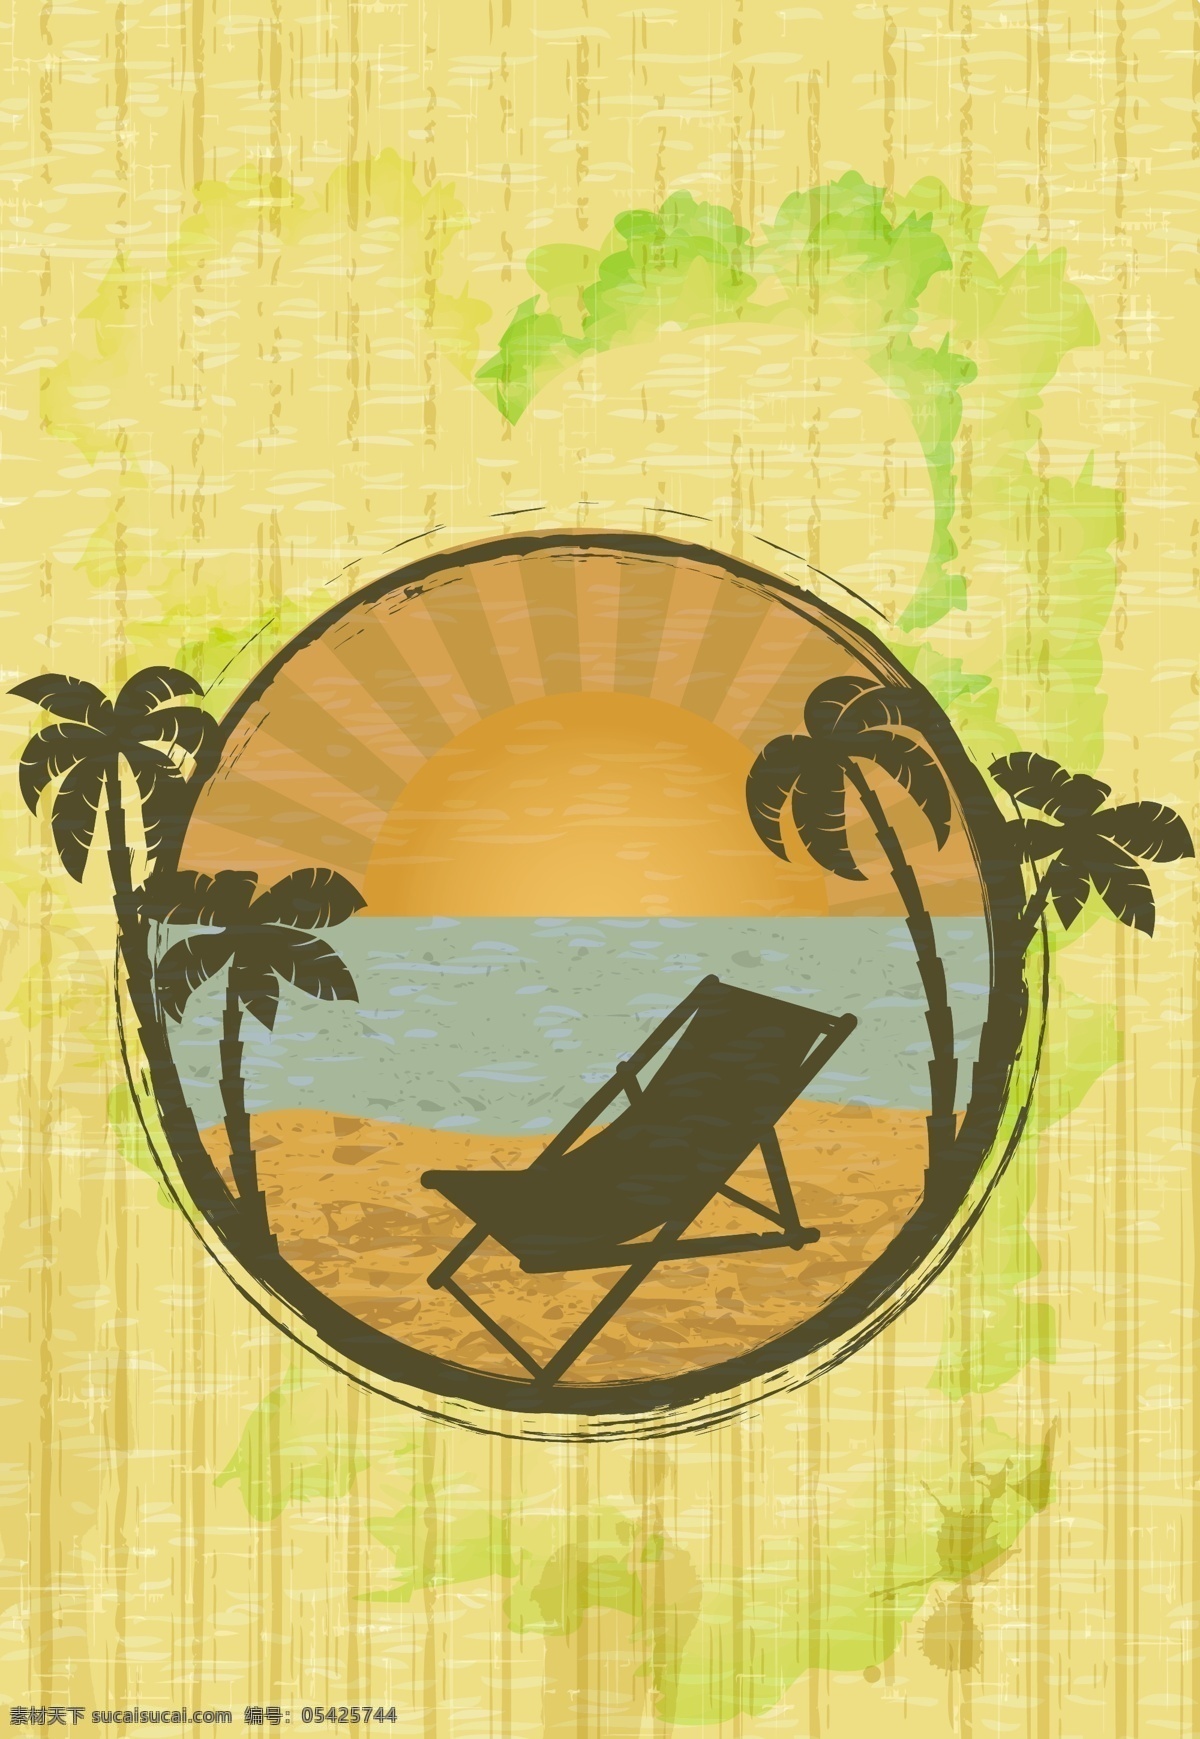 夏日 沙滩 上 椰子树 太阳 椅 矢量 夏日海滩风景 椰树 大海 太阳椅 椰树插画 夏日主题插画 自然风光 空间环境 矢量素材 黄色